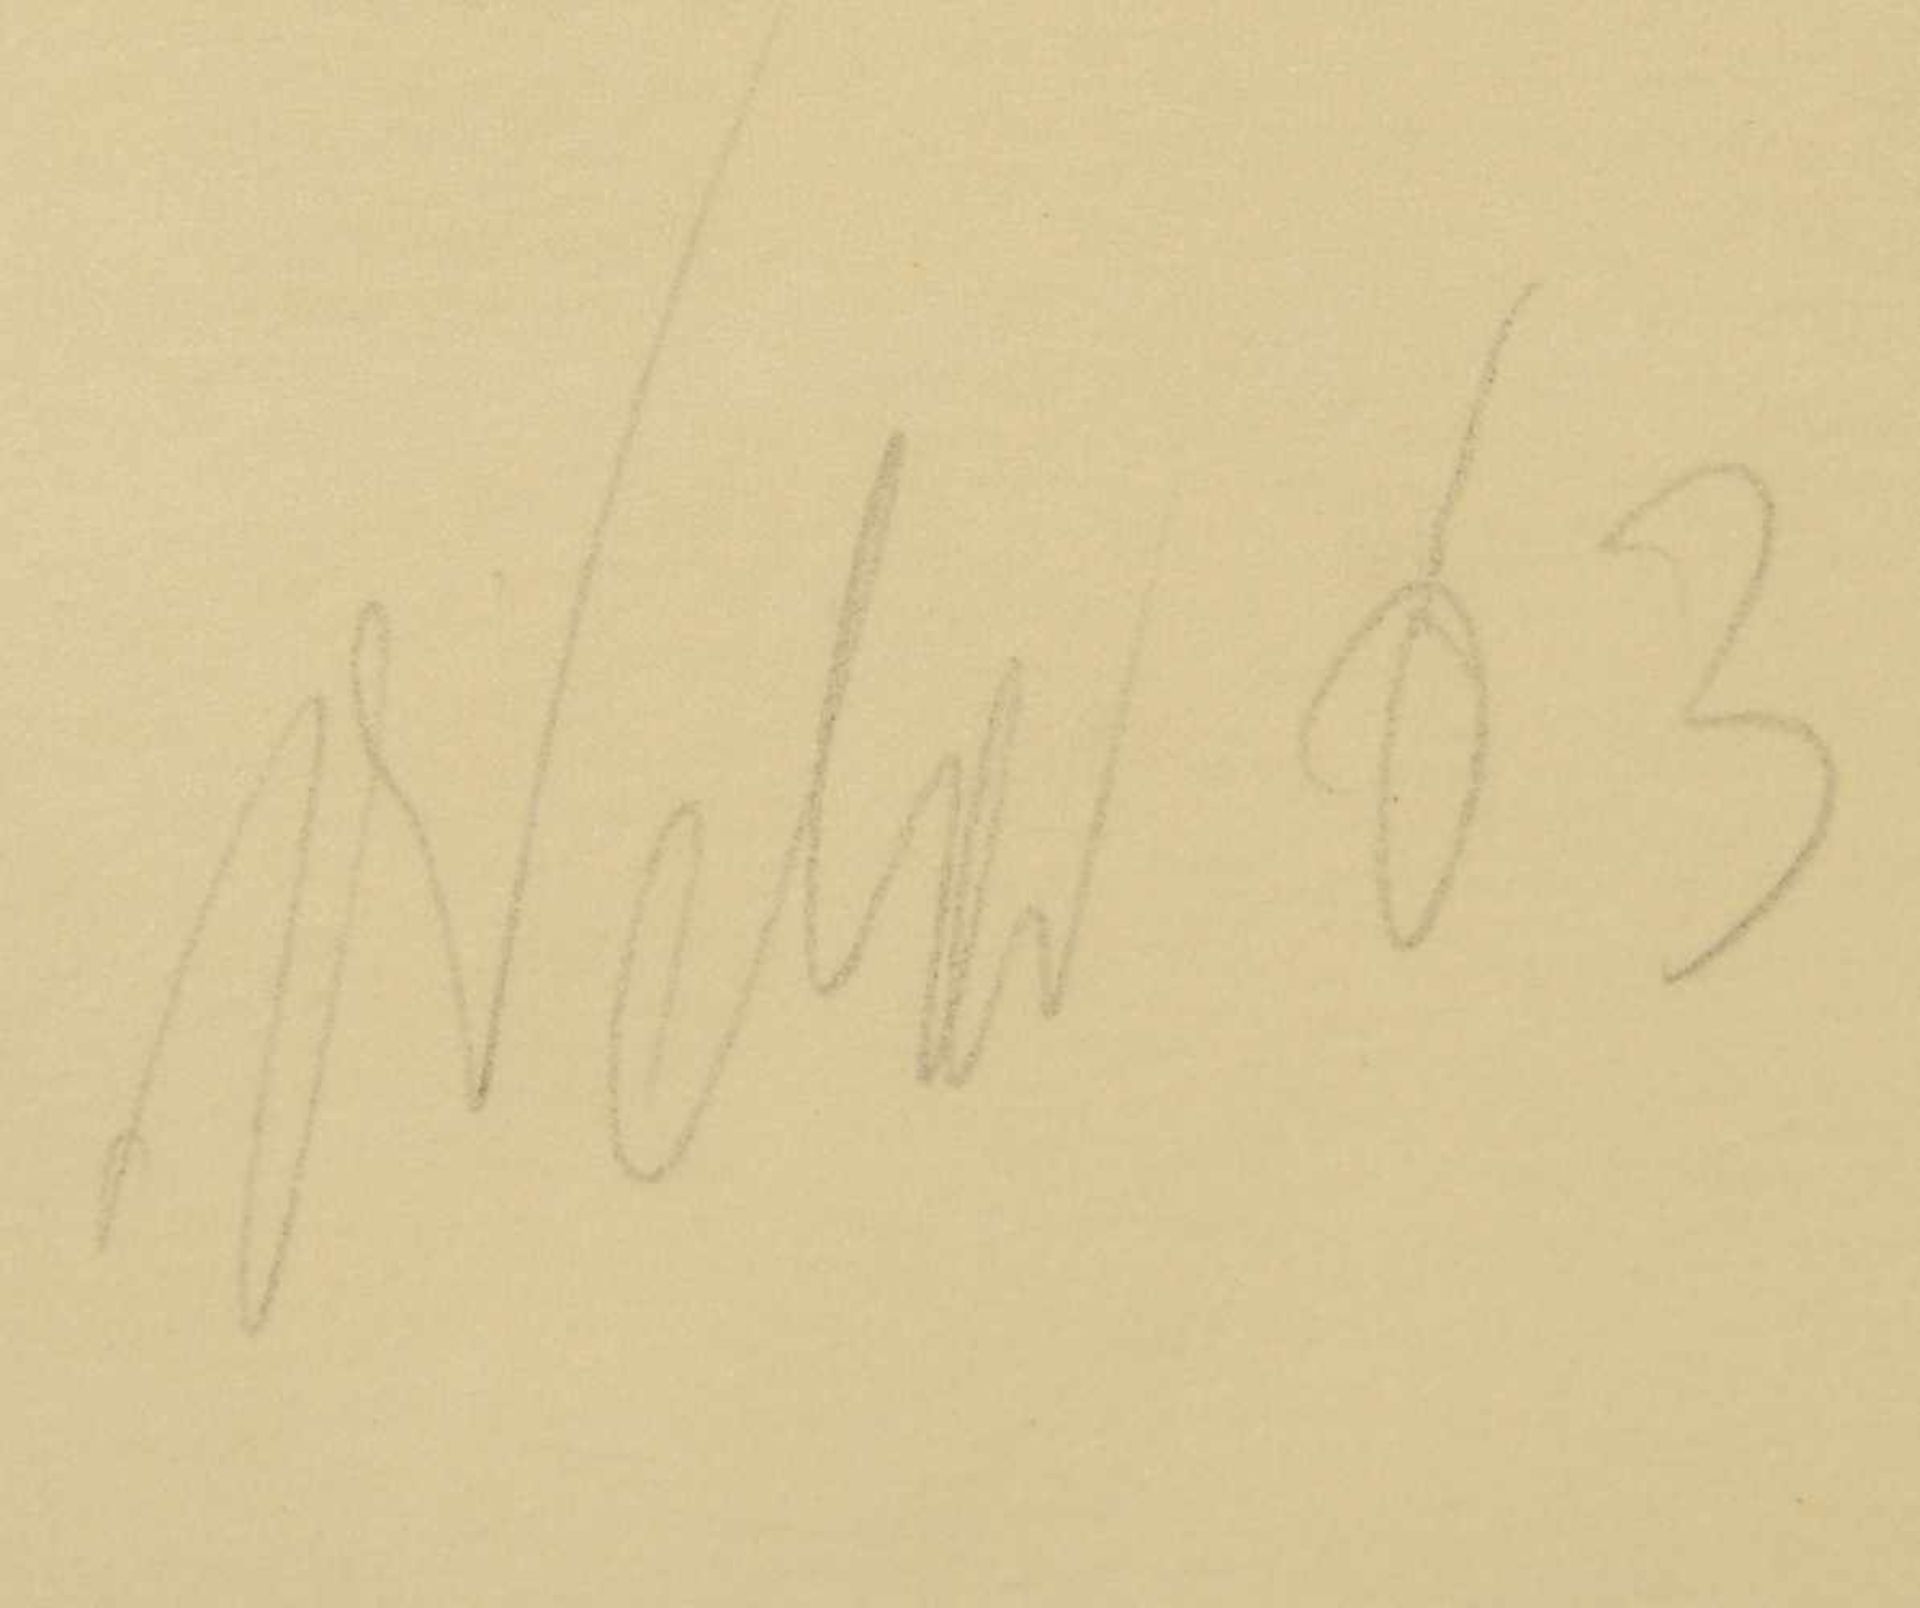 Weber, 'Abstrakte Komposition', Farblithografie, unten links signiert und datiert (19)'63', gerahmt; - Bild 2 aus 2